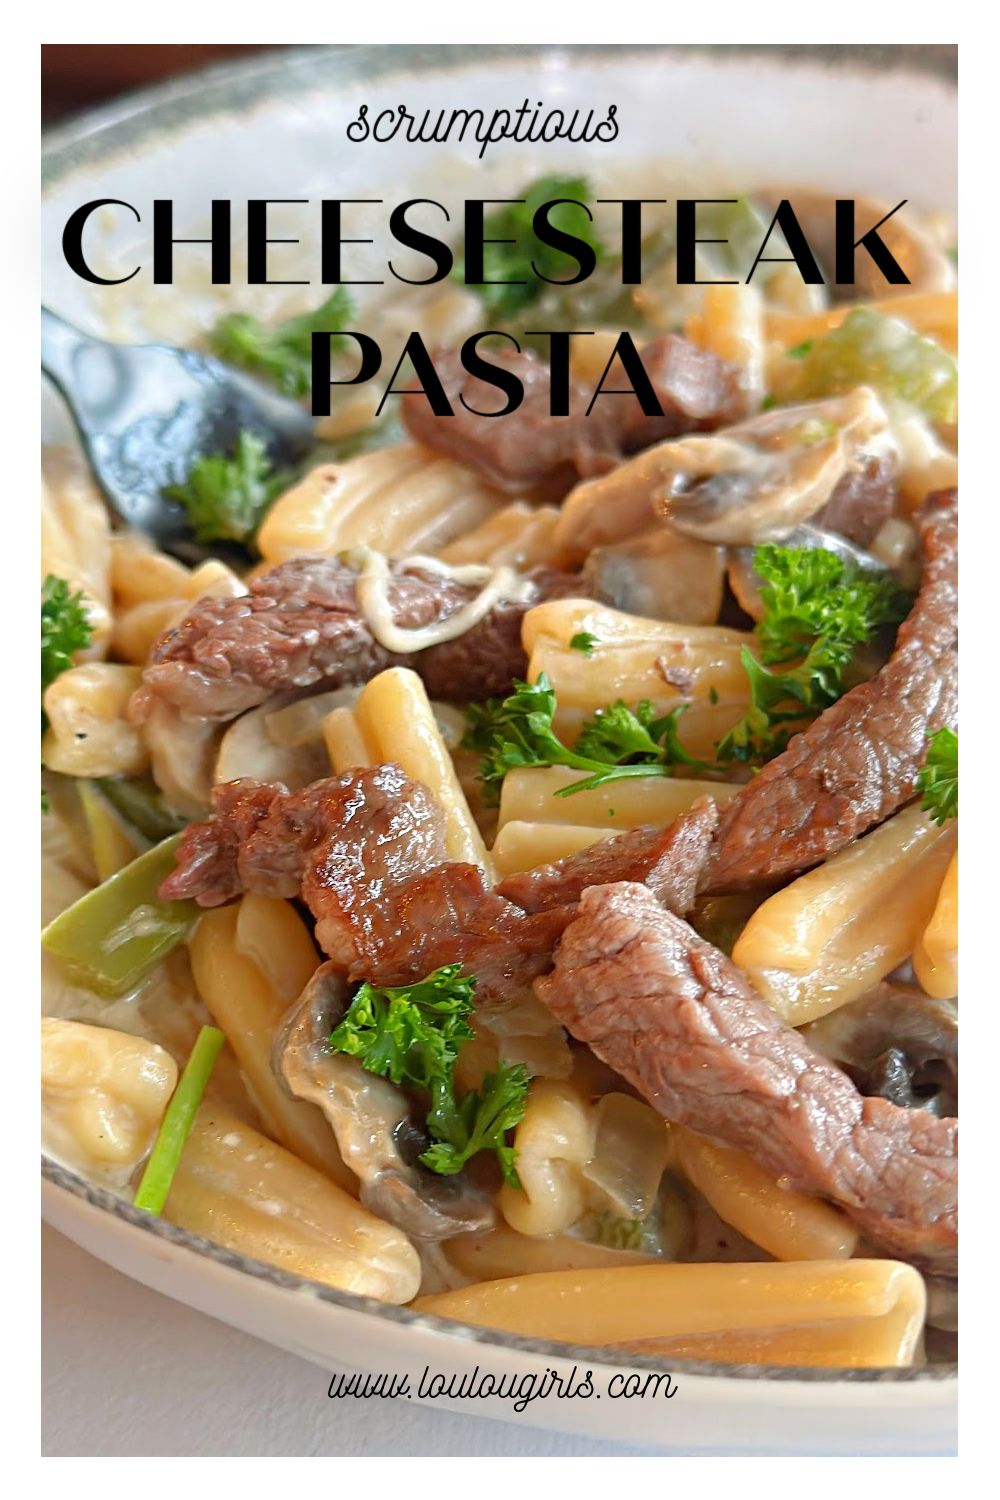 Cheesesteak Pasta #onepotmeal #beefrecipe #pasta #easyrecipe #cheesesteakpasta #dinner #deliciousfood